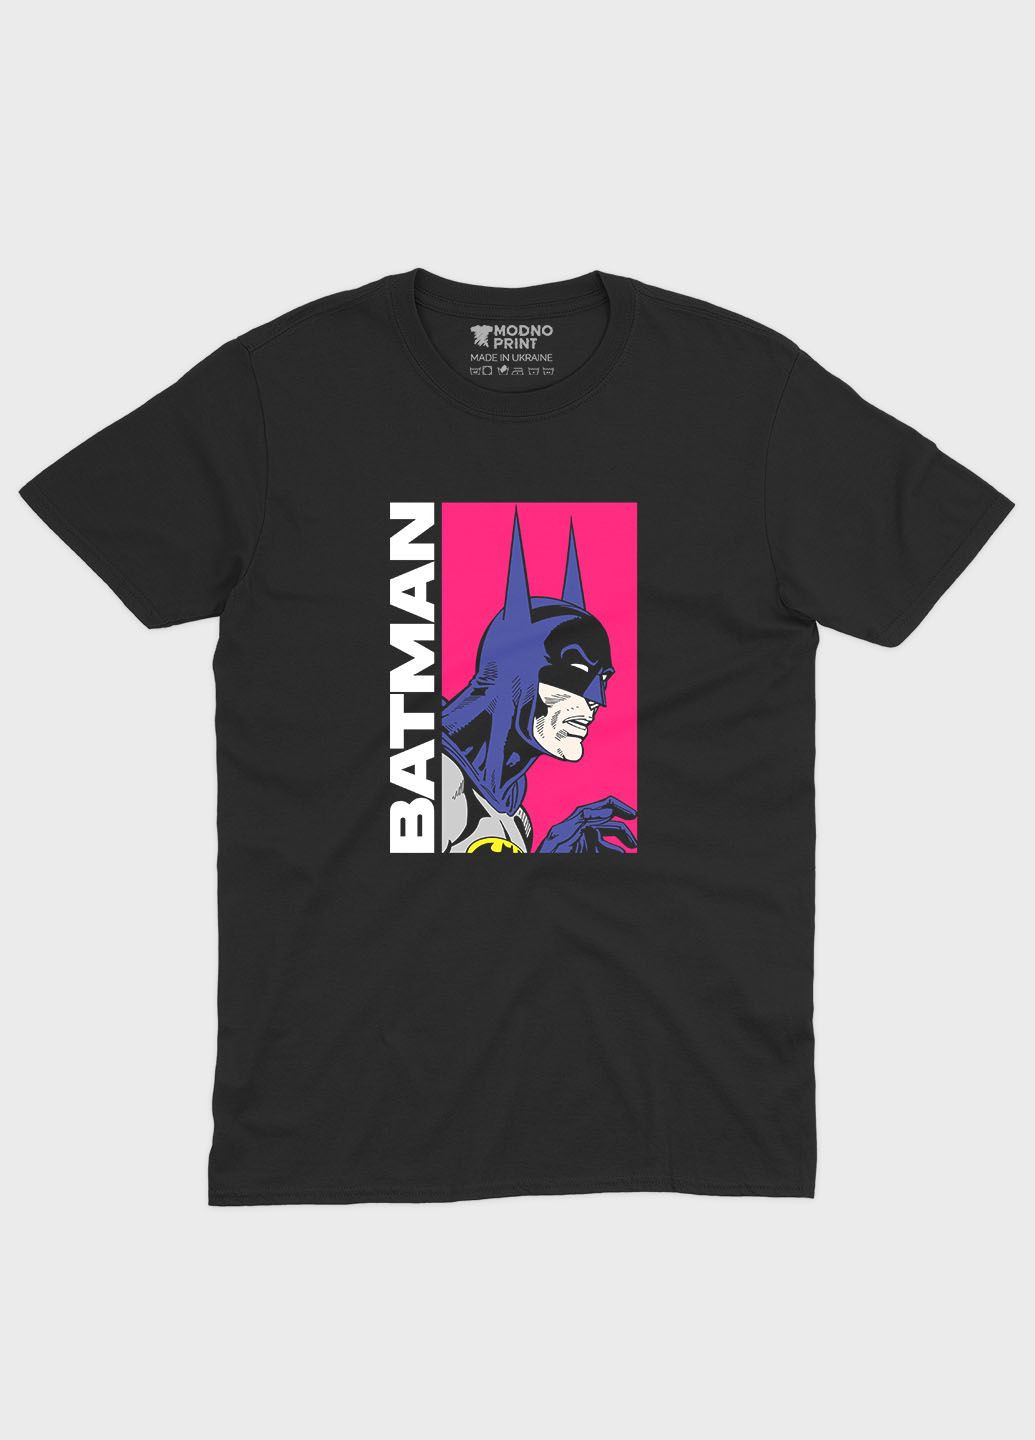 Черная мужская футболка с принтом супергероя - бэтмен (ts001-1-bl-006-003-024) Modno